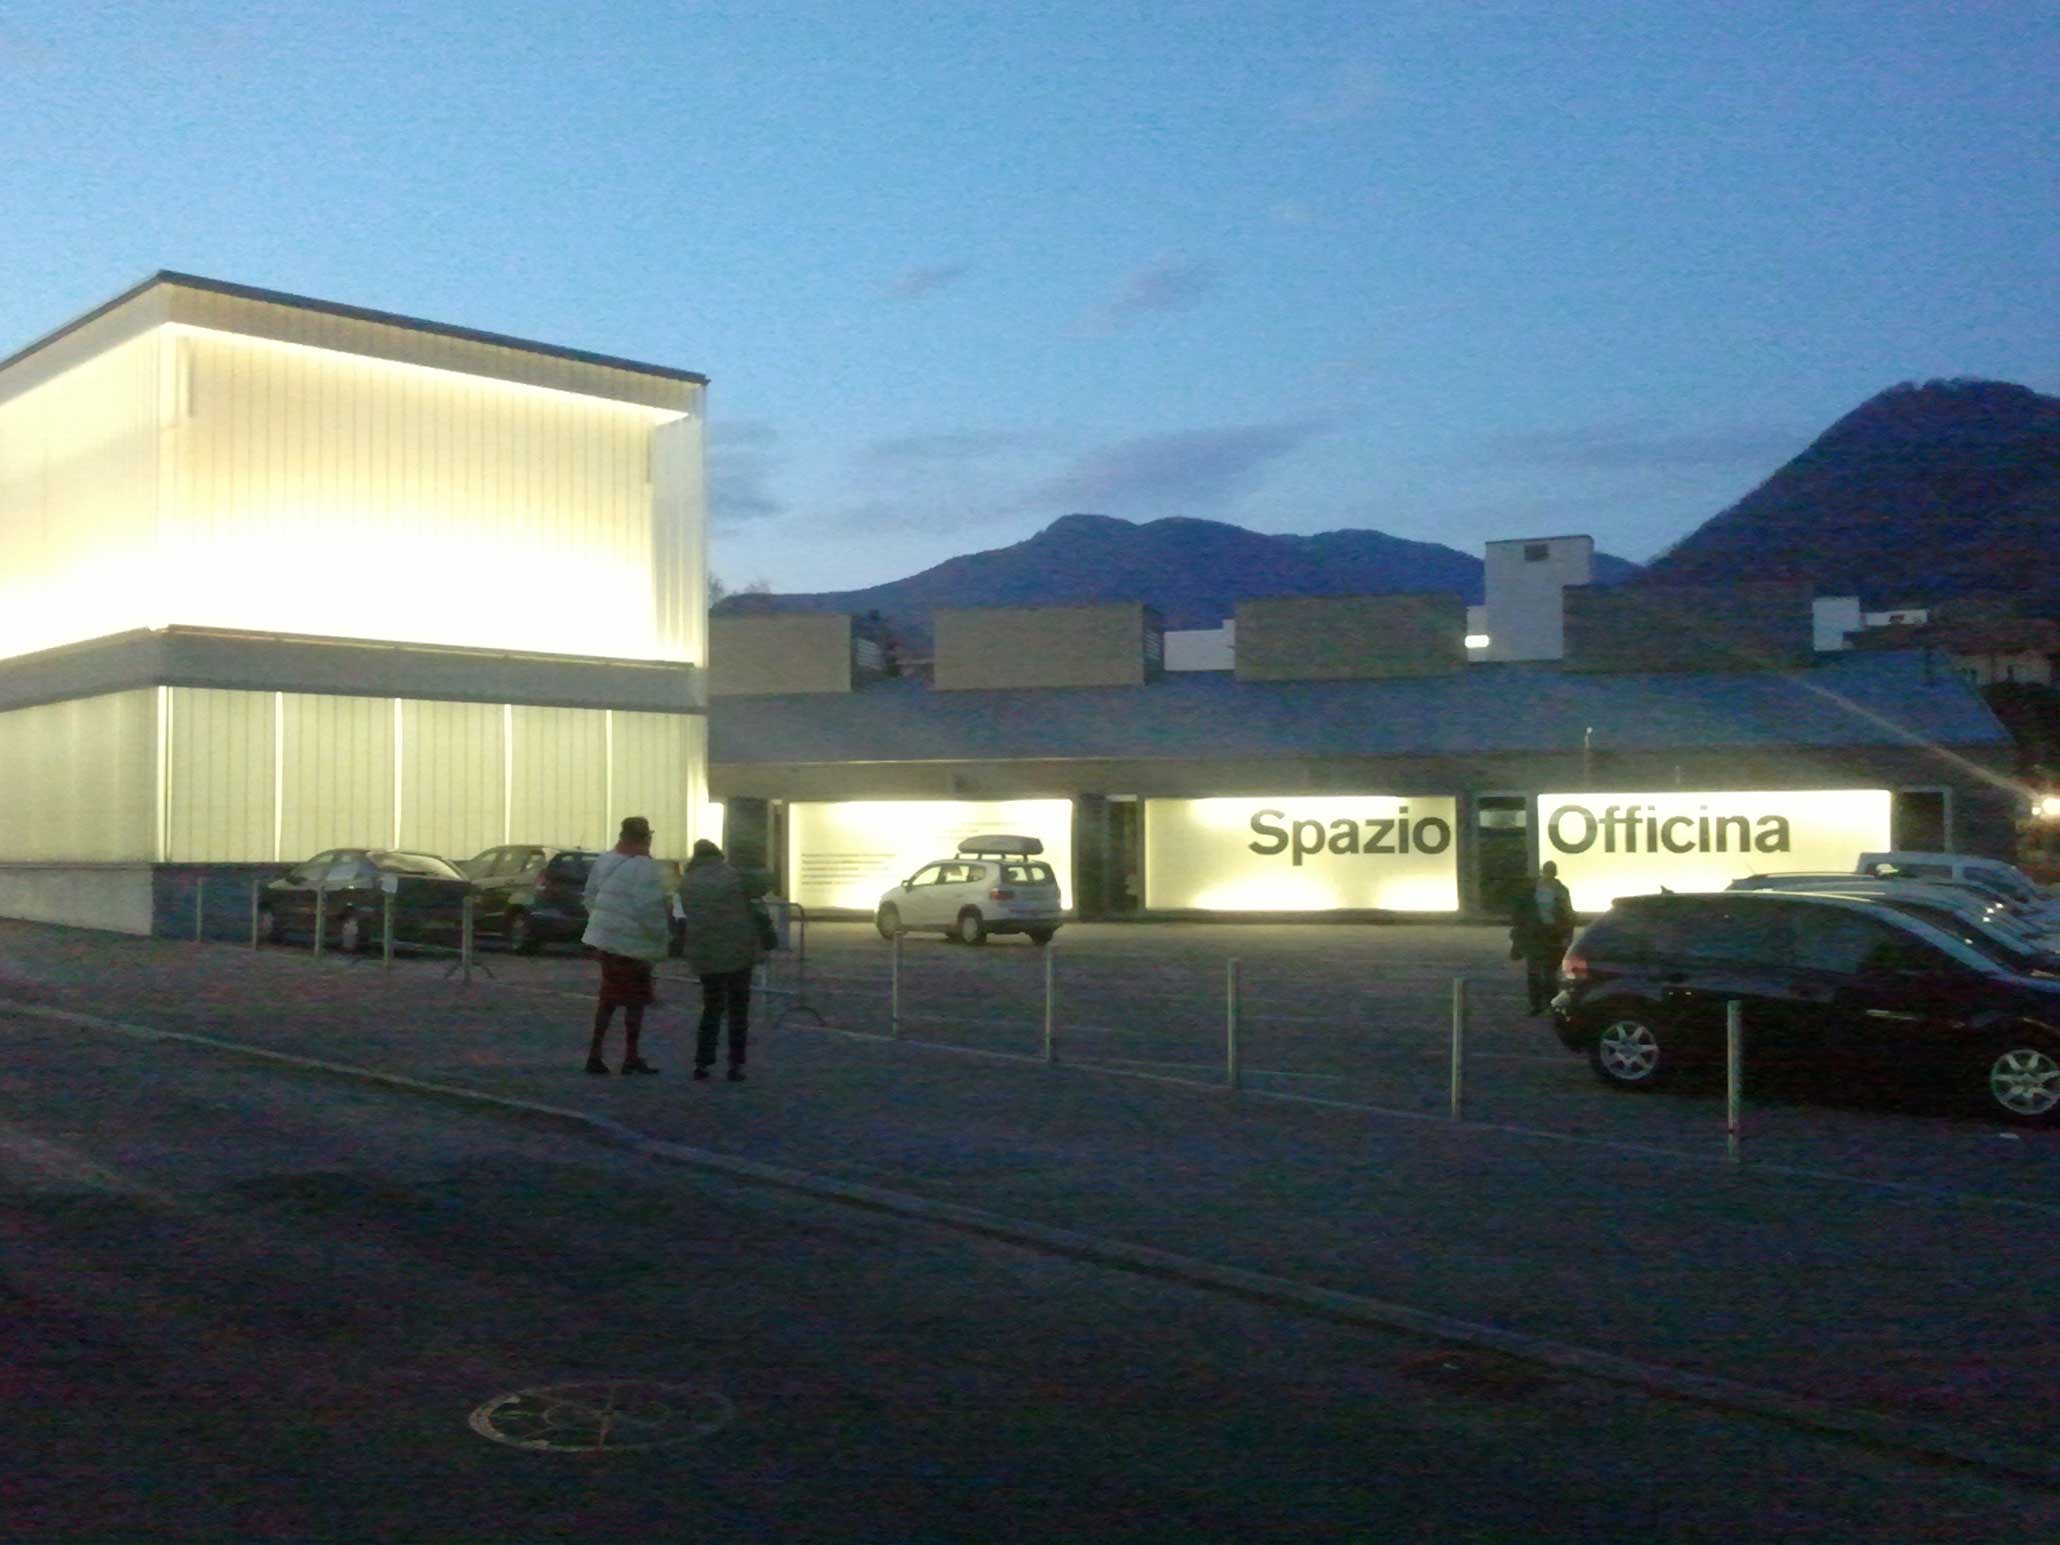 Gruppenausstellung 'Enigma della Modernità', Spazio Officina, Chiasso, Schweiz 2012.